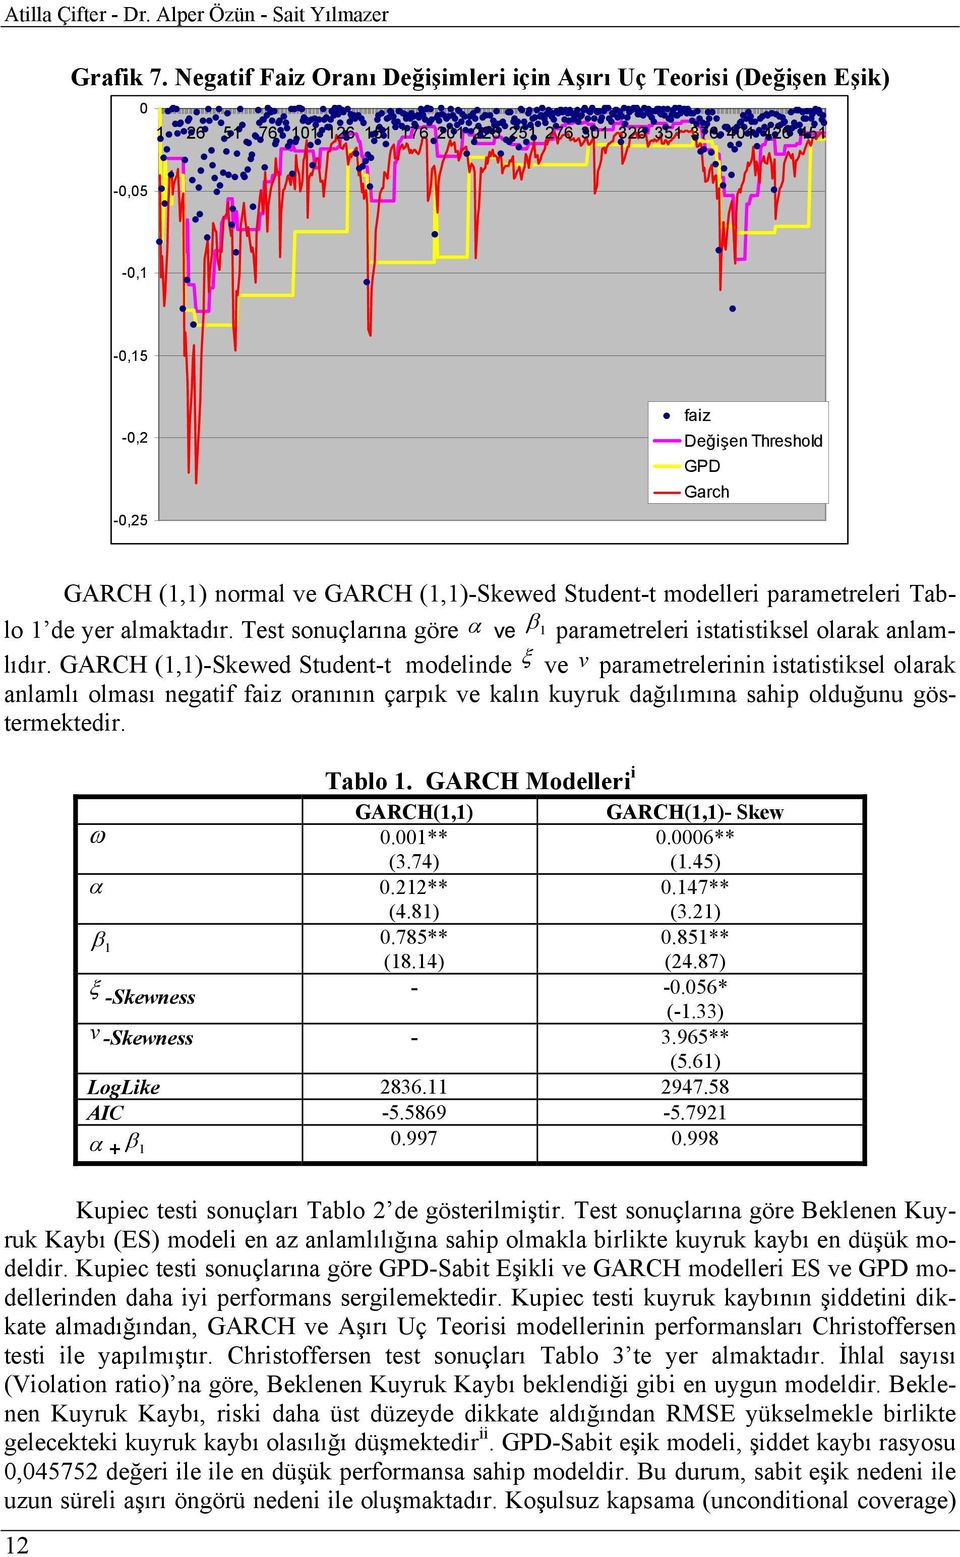 GARCH (1,1) normal ve GARCH (1,1)-Skewed Student-t modelleri parametreleri Tablo 1 de yer almaktadır. Test sonuçlarına göre α ve β 1 parametreleri istatistiksel olarak anlamlıdır.